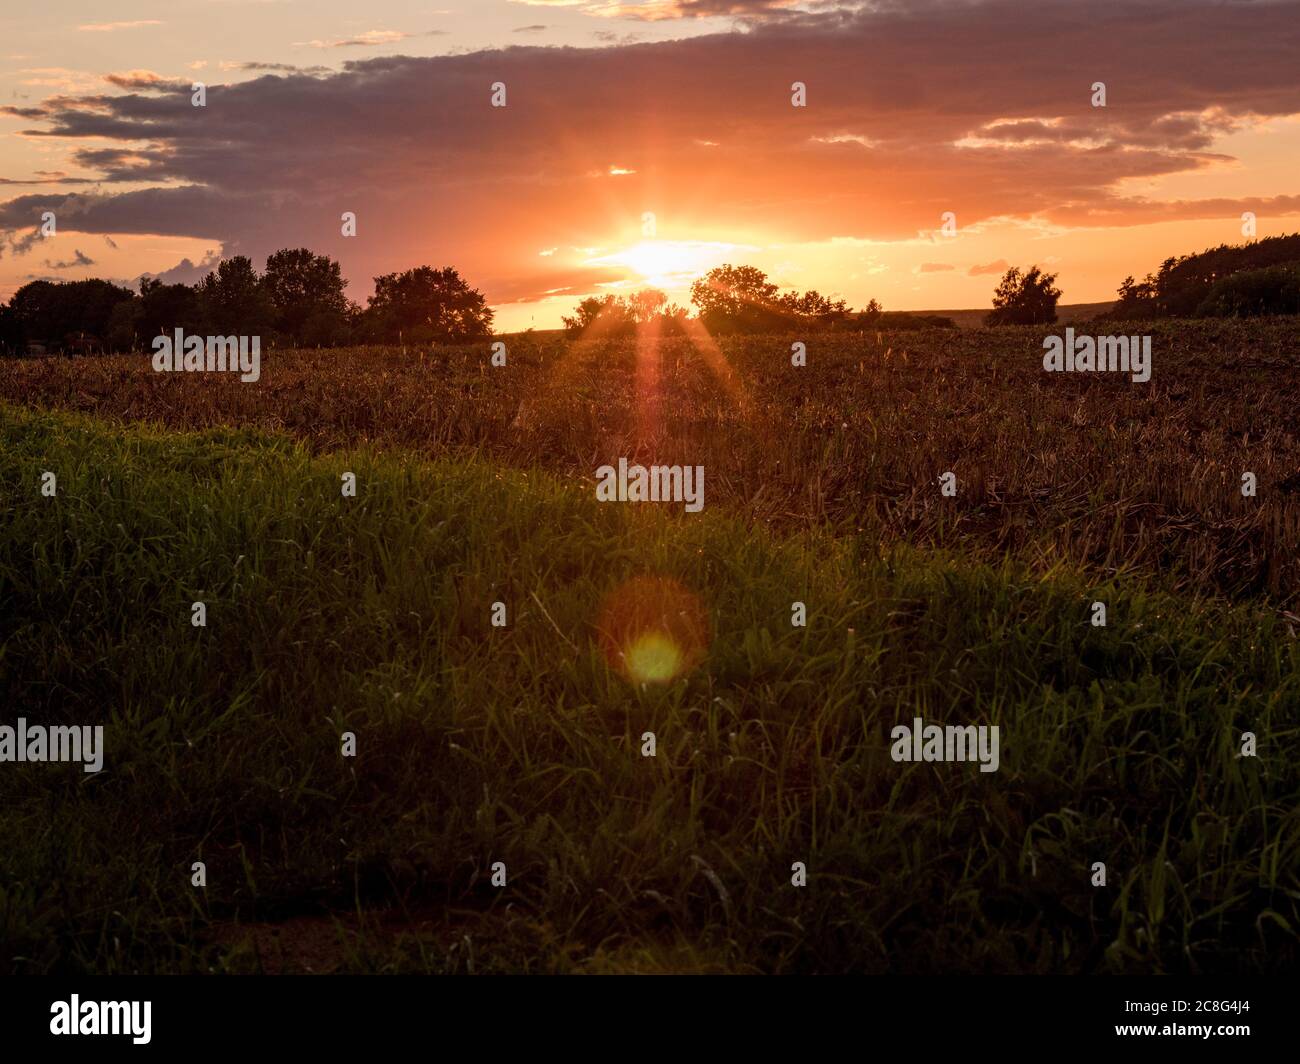 Sonnenuntergang Sonnenaufgang auf einem Getreidefeld auf der Insel Rügen mit einer Farm, Bäumen, Strohballen, roten Mohnblumen nach einem Gewitter Foto Stock